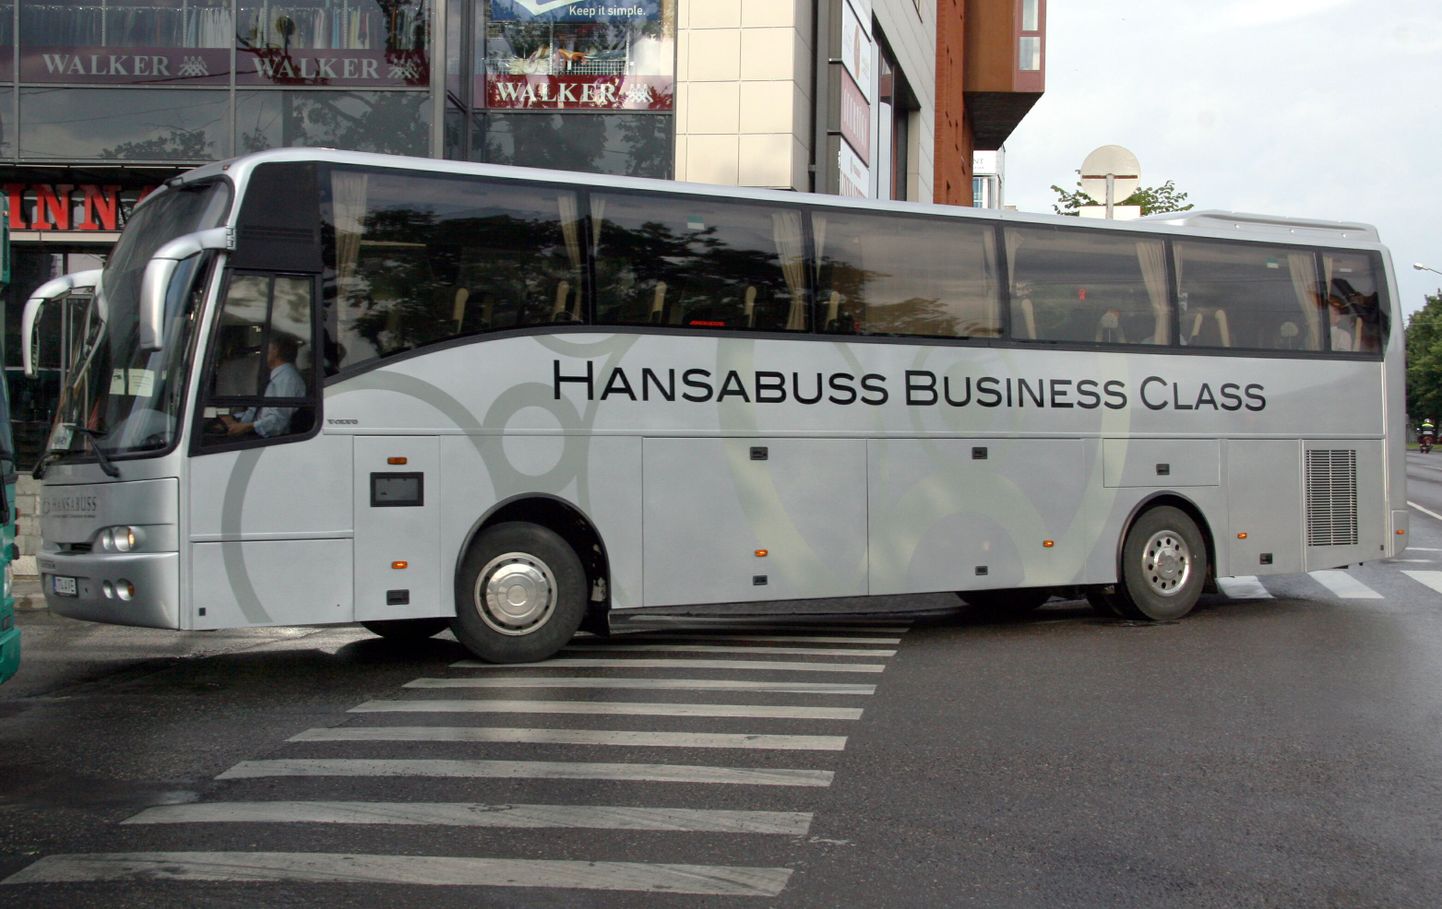 Автобус Hansabuss. Иллюстративное фото.